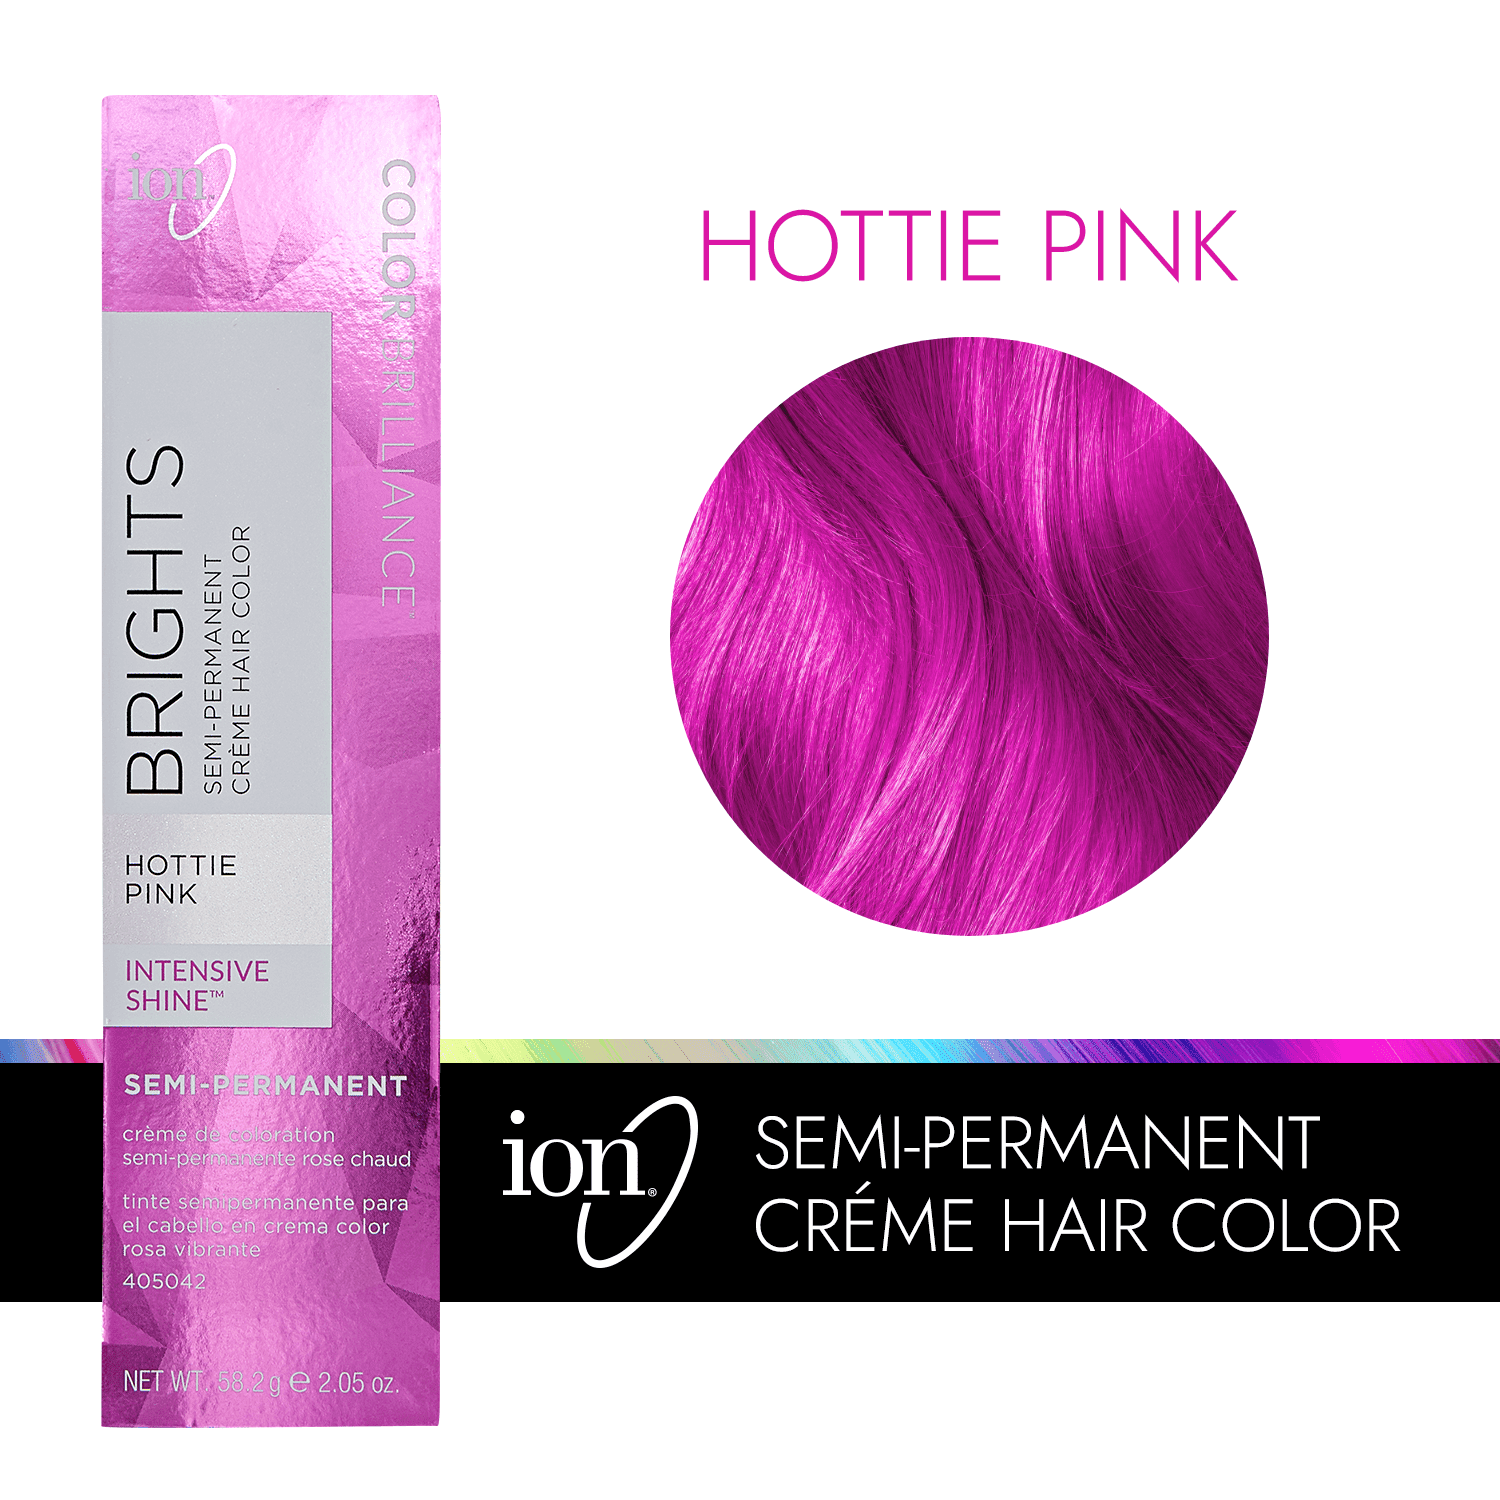 Hottie pink ion color